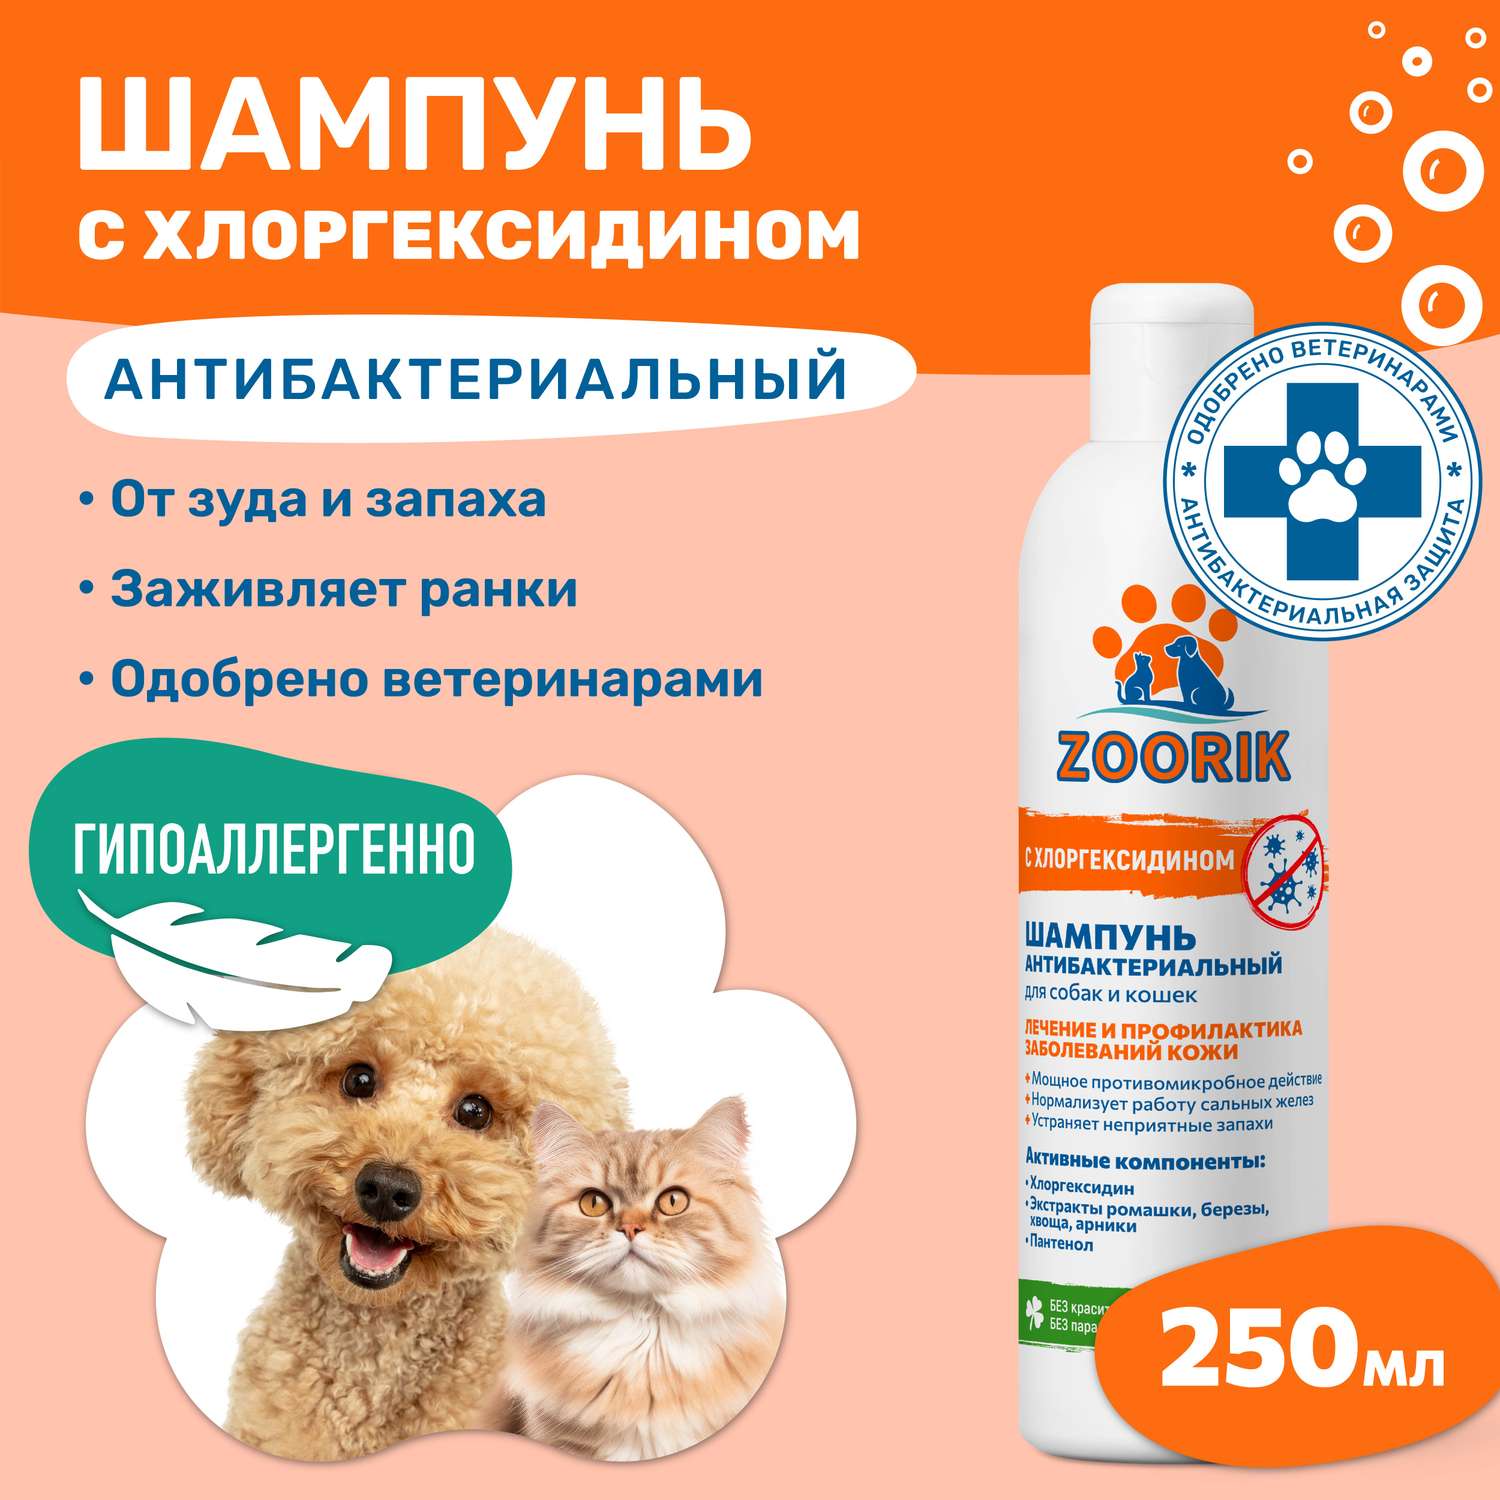 Шампунь ZOORIK для собак и кошек антибактериальный 250 мл - фото 2